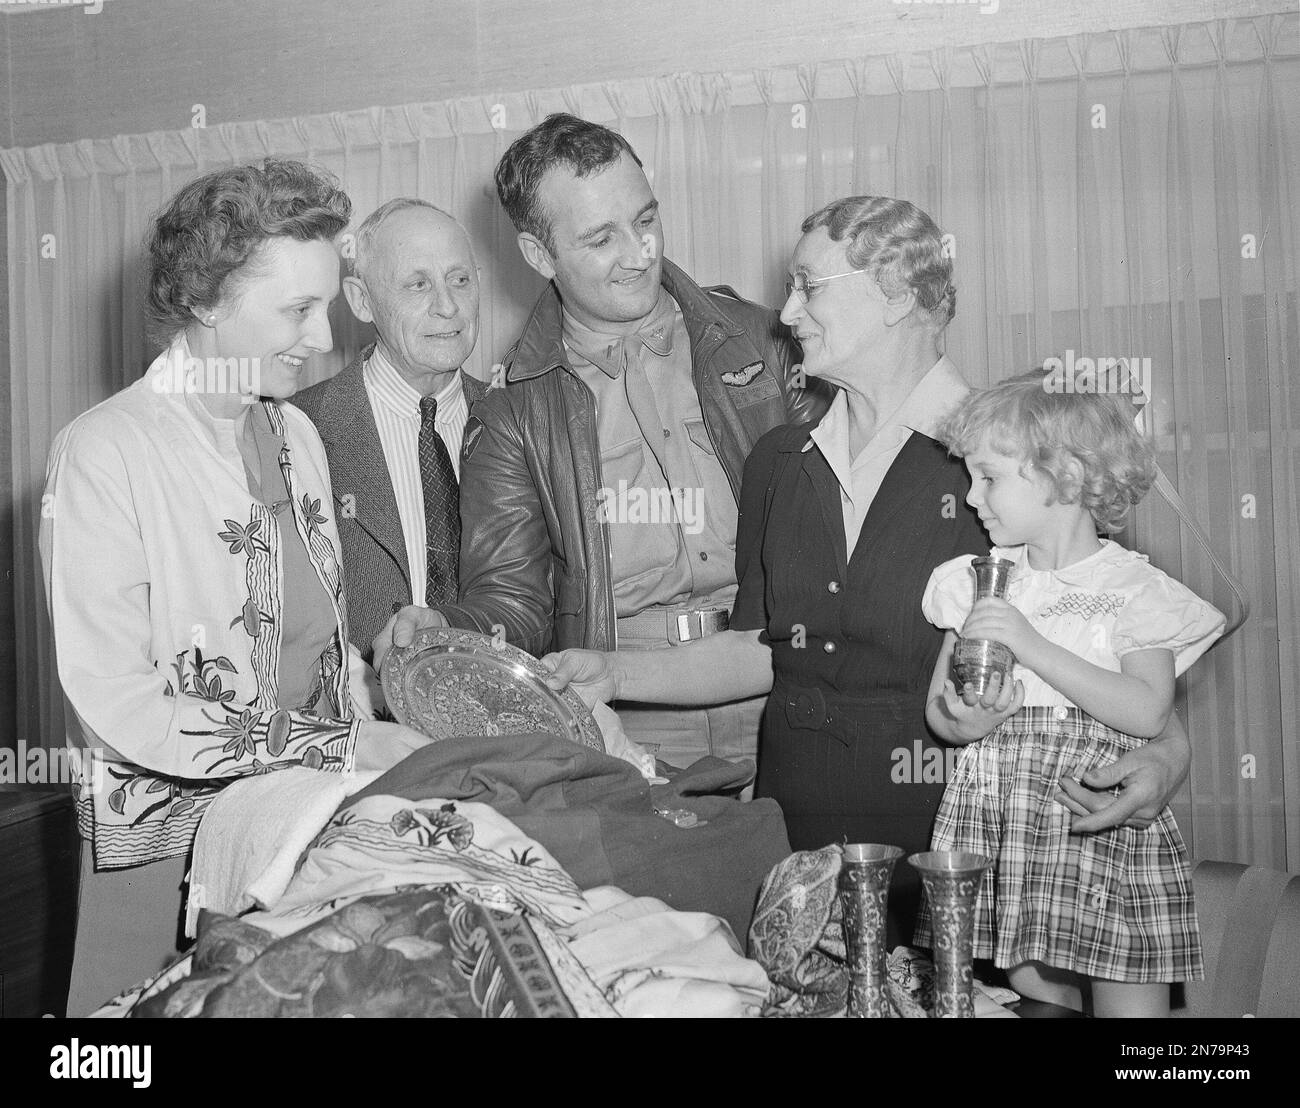 ROSE MARIE, from left, Ann Blyth, Bert Lahr, 1954 Stock Photo - Alamy